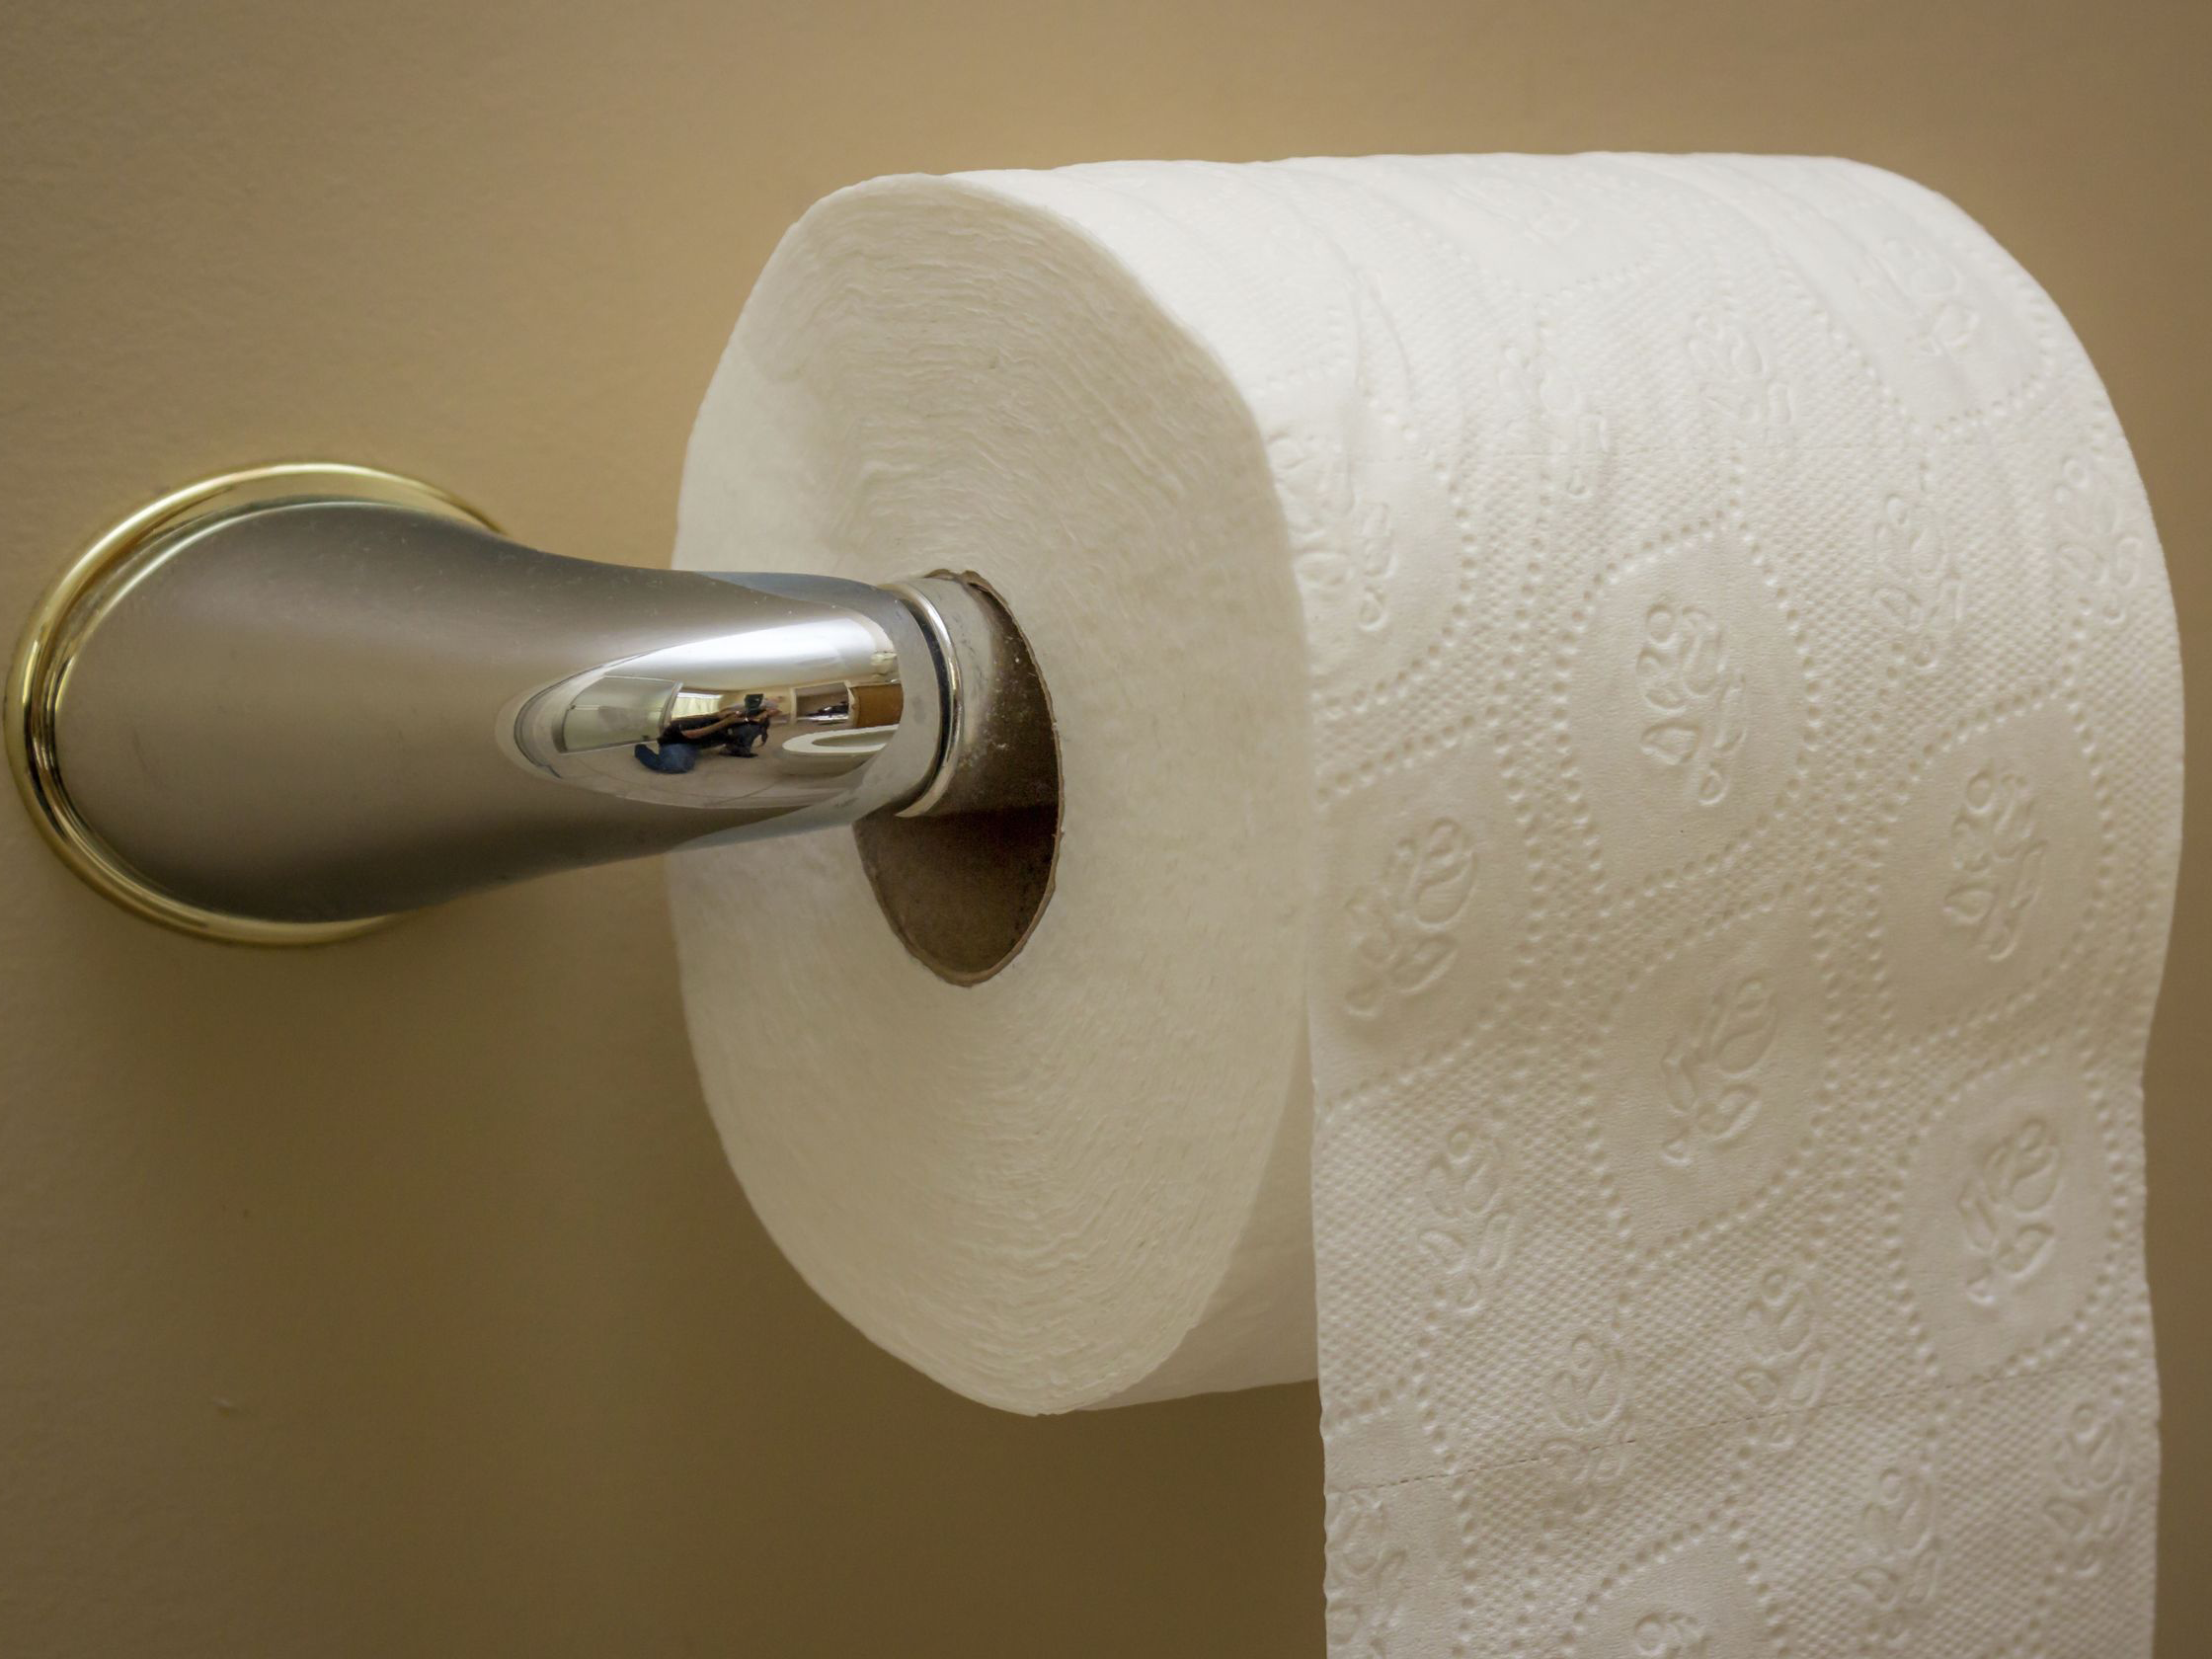 Купить туалетную бумагу недорого. Туалетная бумага. Красивая туалетная бумага. Туалетная бумага с тиснением. Большой рулон туалетной бумаги.